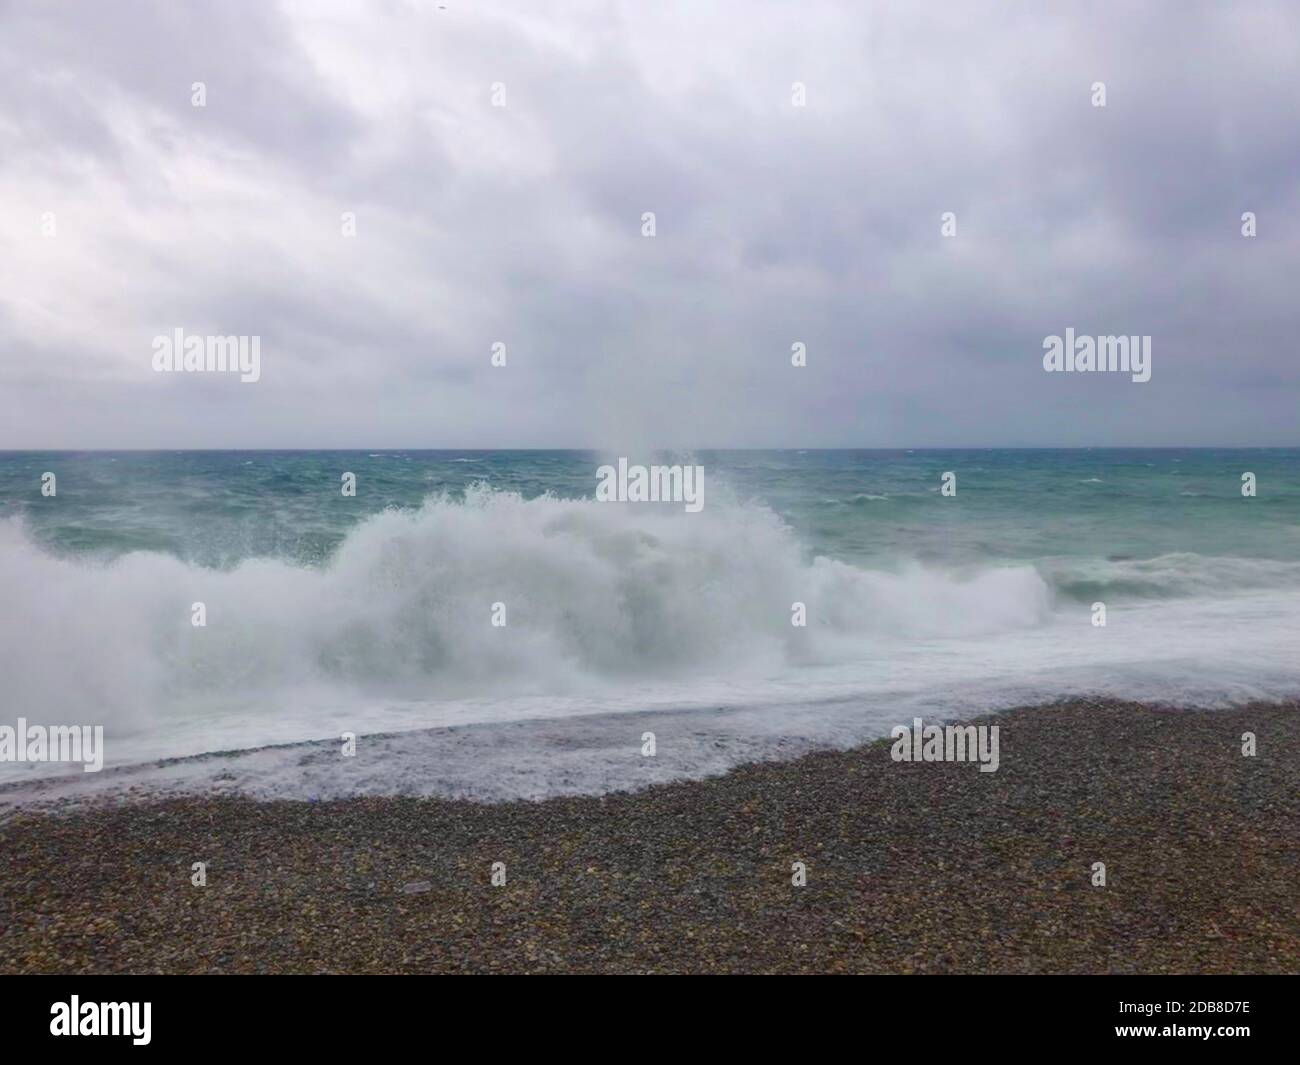 Wellen krachen am Strand während eines Sturms, Promenade des Anglais, Nizza, Alpes-Maritimes, Frankreich Stockfoto